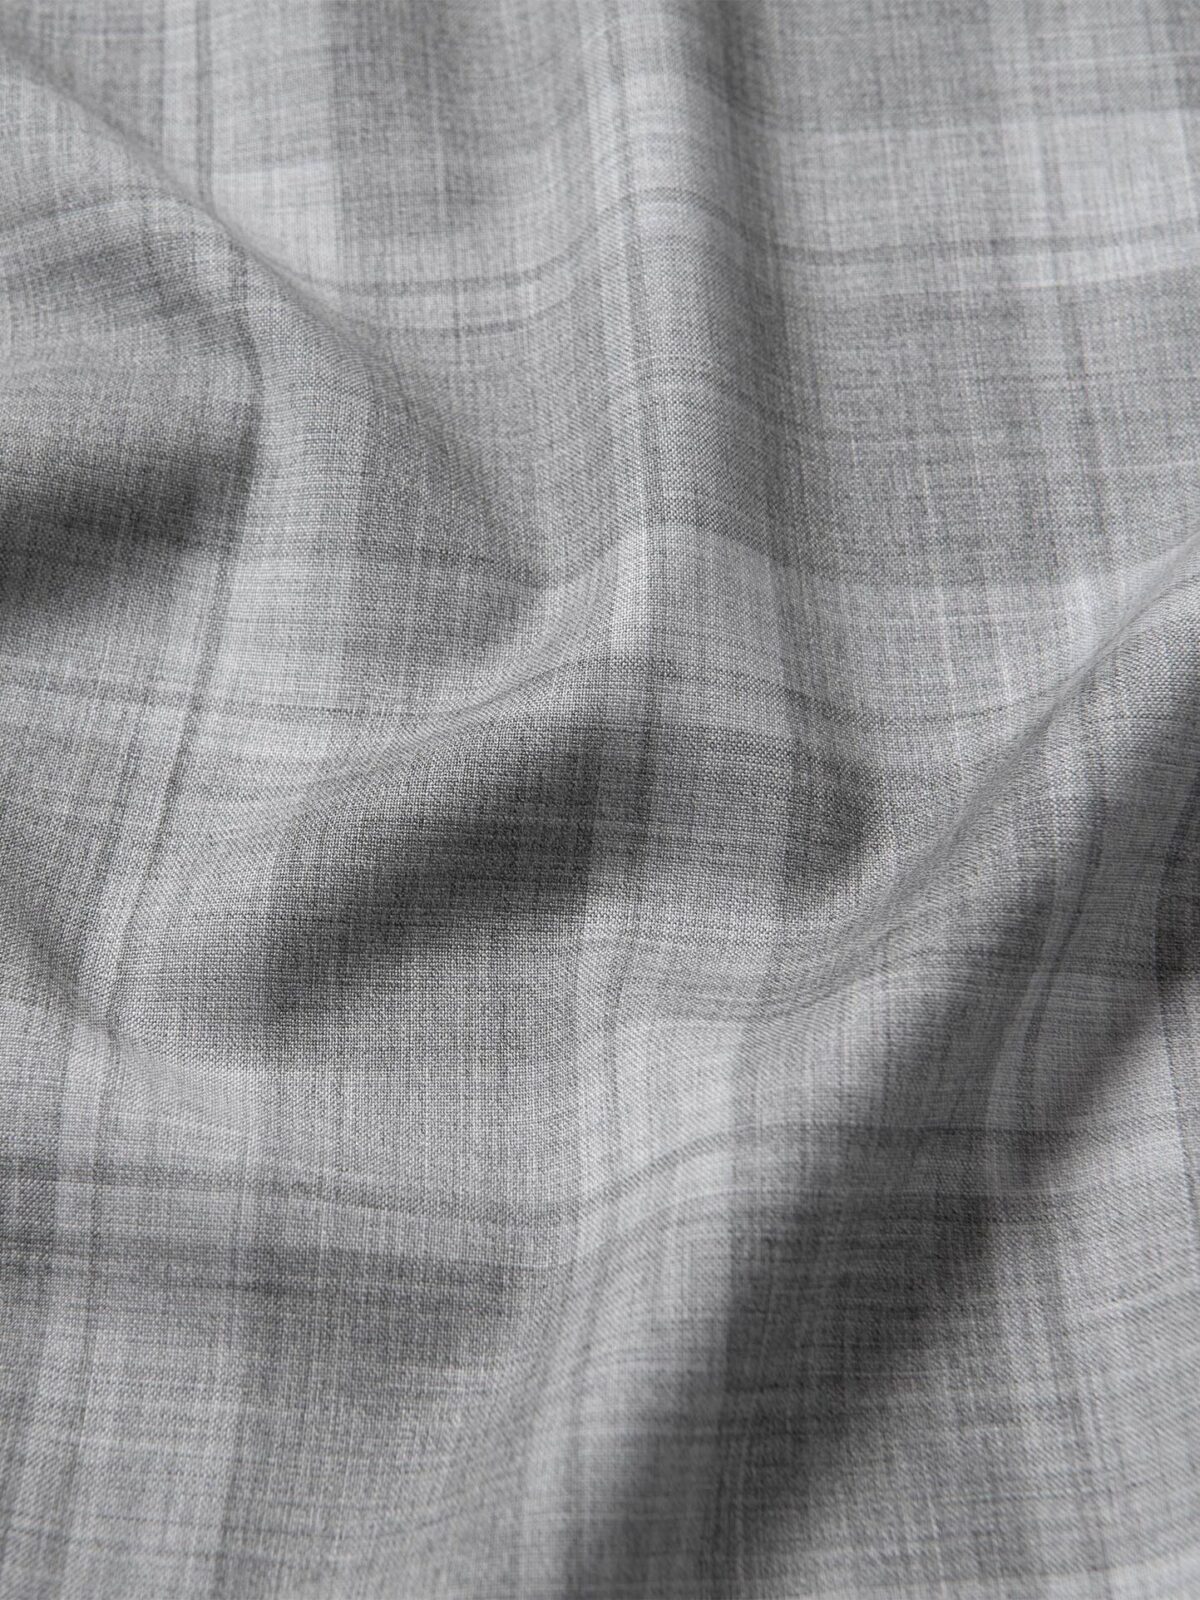 Reda Merino Wool Grey Tonal Plaid Shirts by Proper Cloth